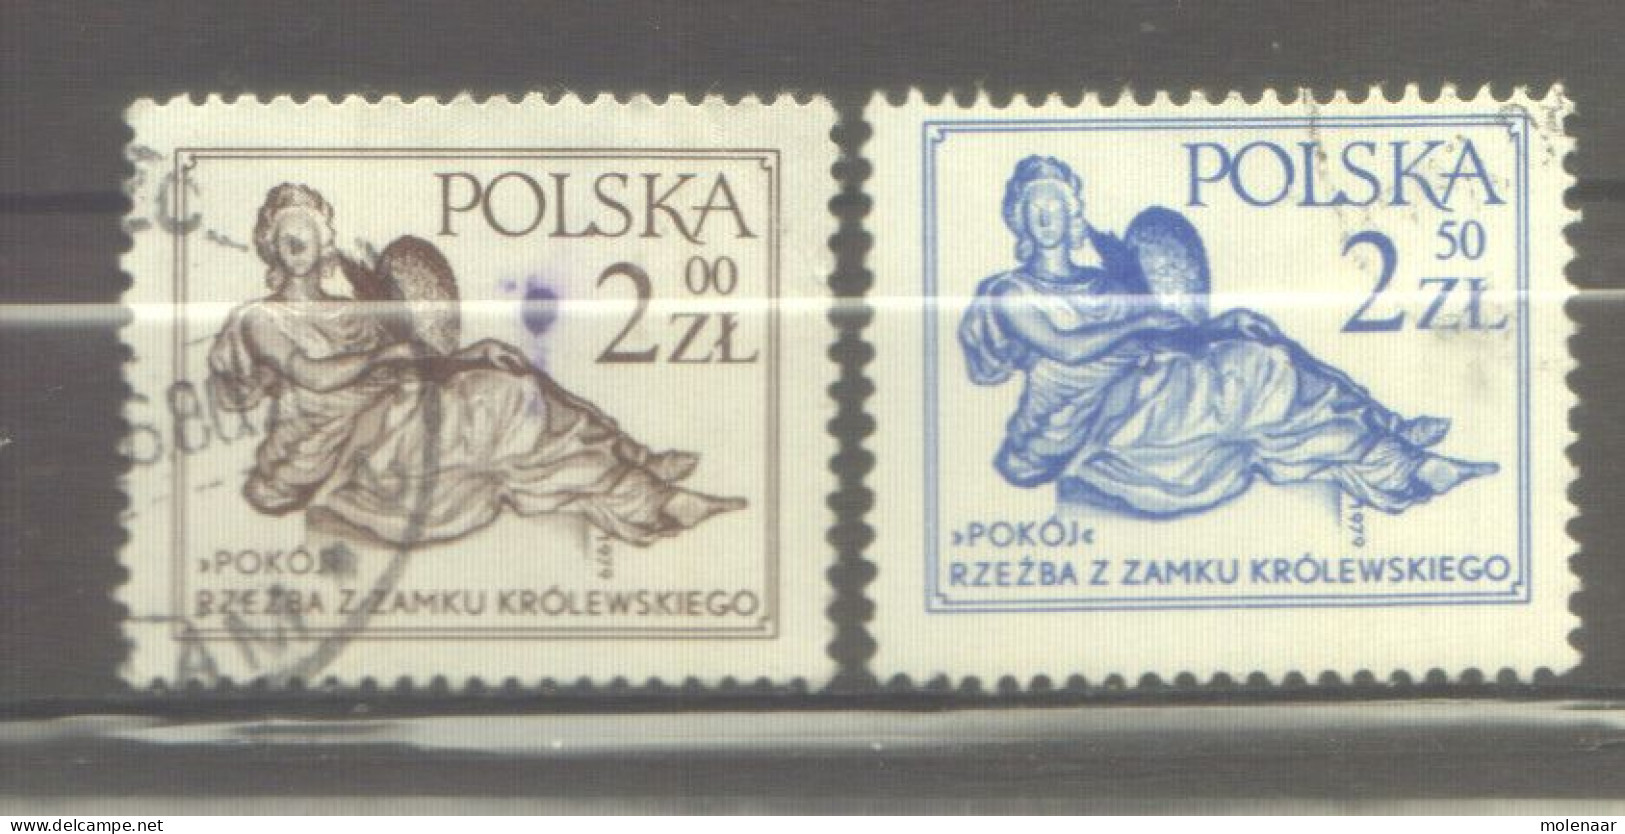 Postzegels > Europa > Polen > 1944-.... Republiek > 1971-80 > Gebruikt  2652-2653 (12176) - Gebruikt